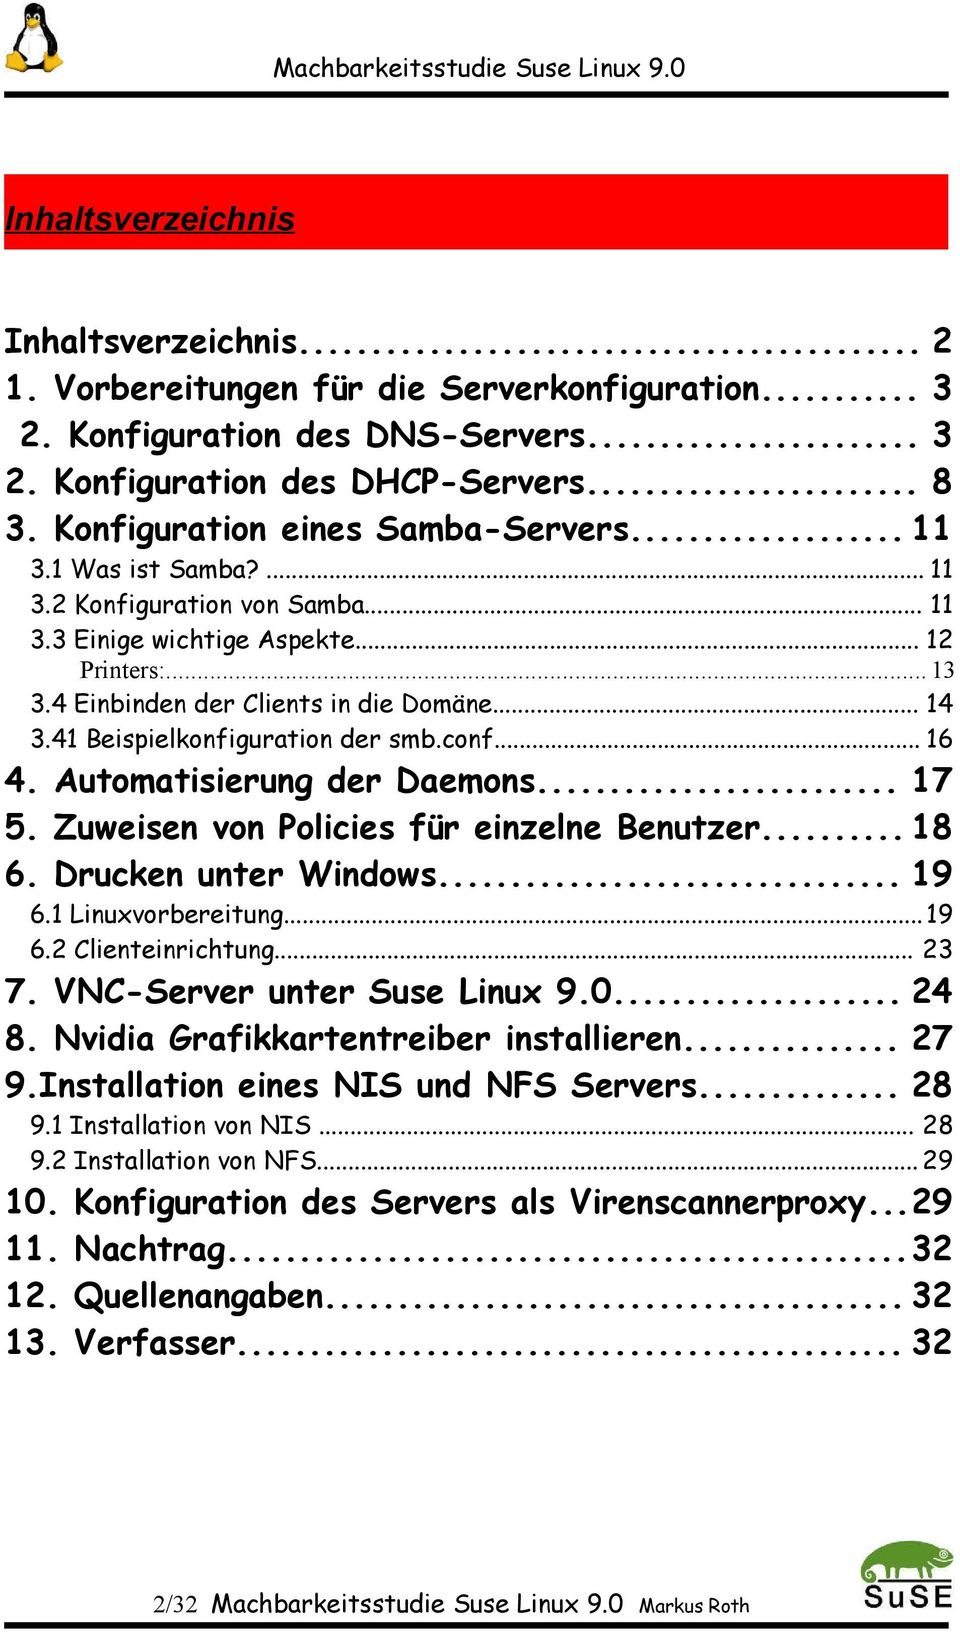 41 Beispielkonfiguration der smb.conf... 16 4. Automatisierung der Daemons... 17 5. Zuweisen von Policies für einzelne Benutzer... 18 6. Drucken unter Windows... 19 6.1 Linuxvorbereitung... 19 6.2 Clienteinrichtung.